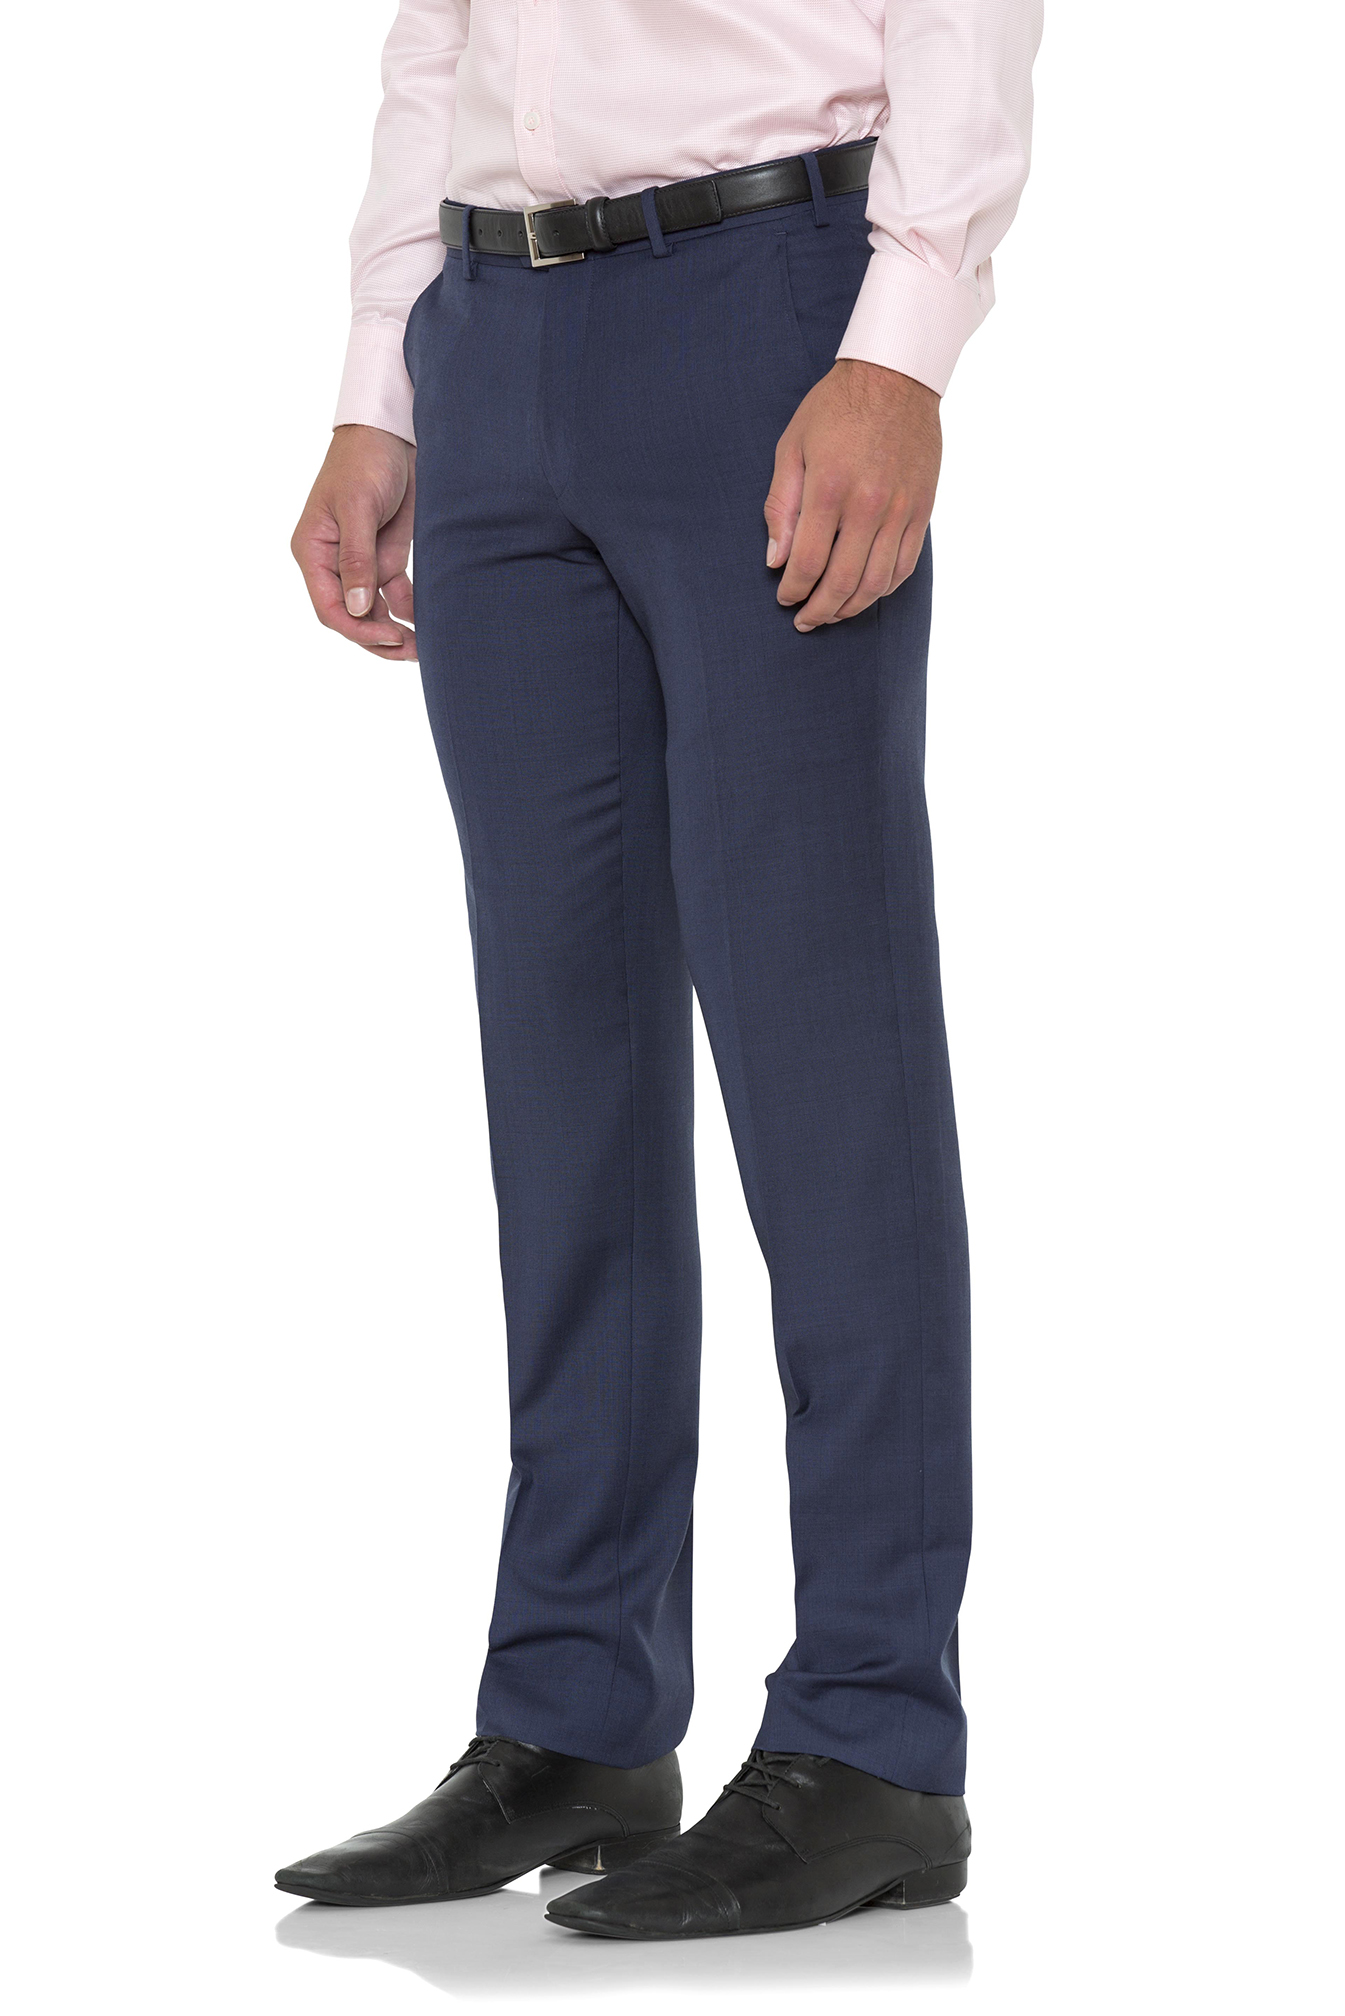 Cambridge FCD001 Blue Check Trouser